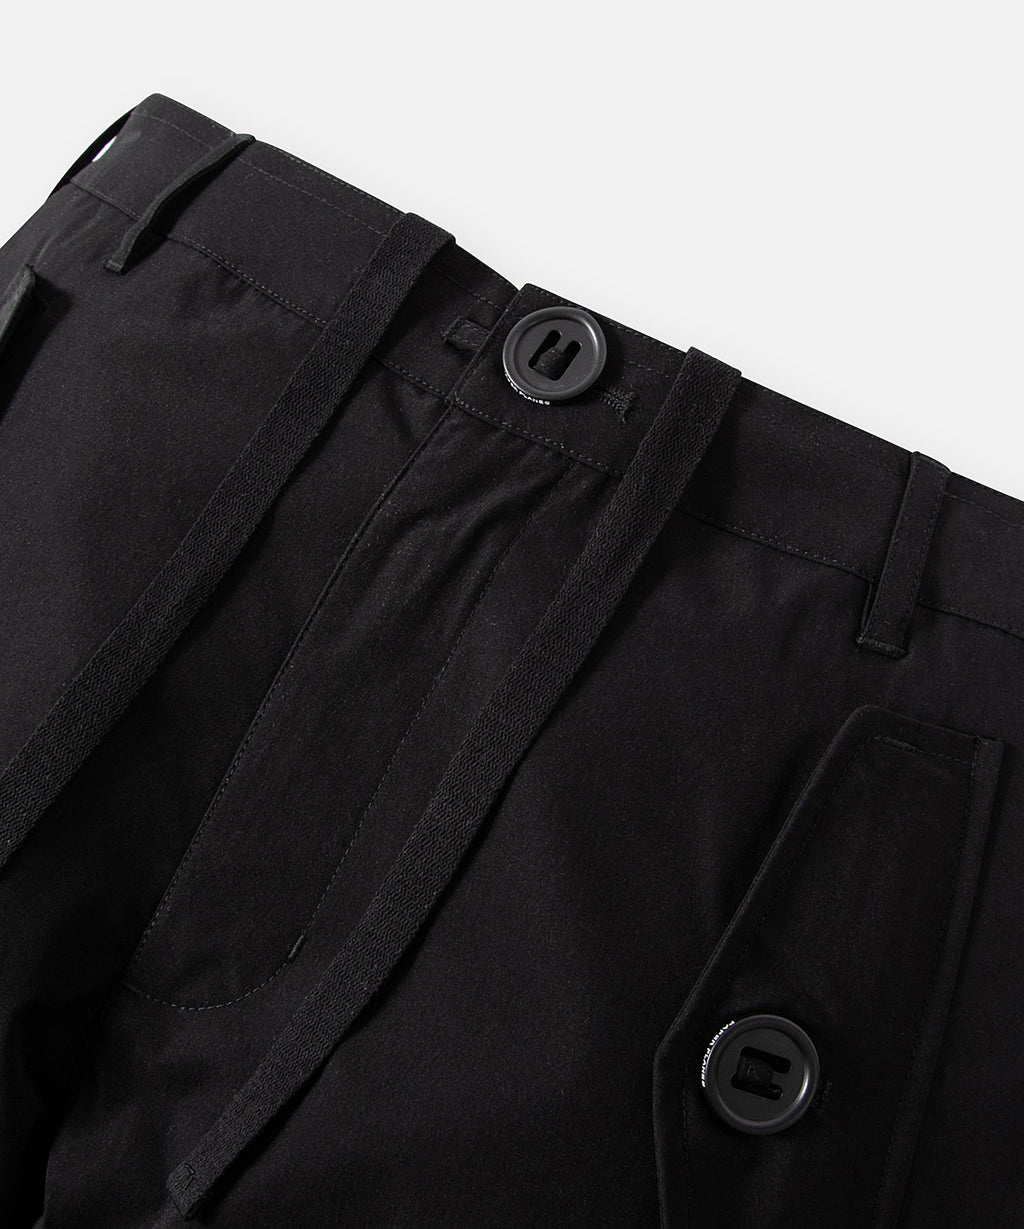  Front waist detail on Paper Planes Cotton Touch Explorer’s Cargo Pant, color Black.